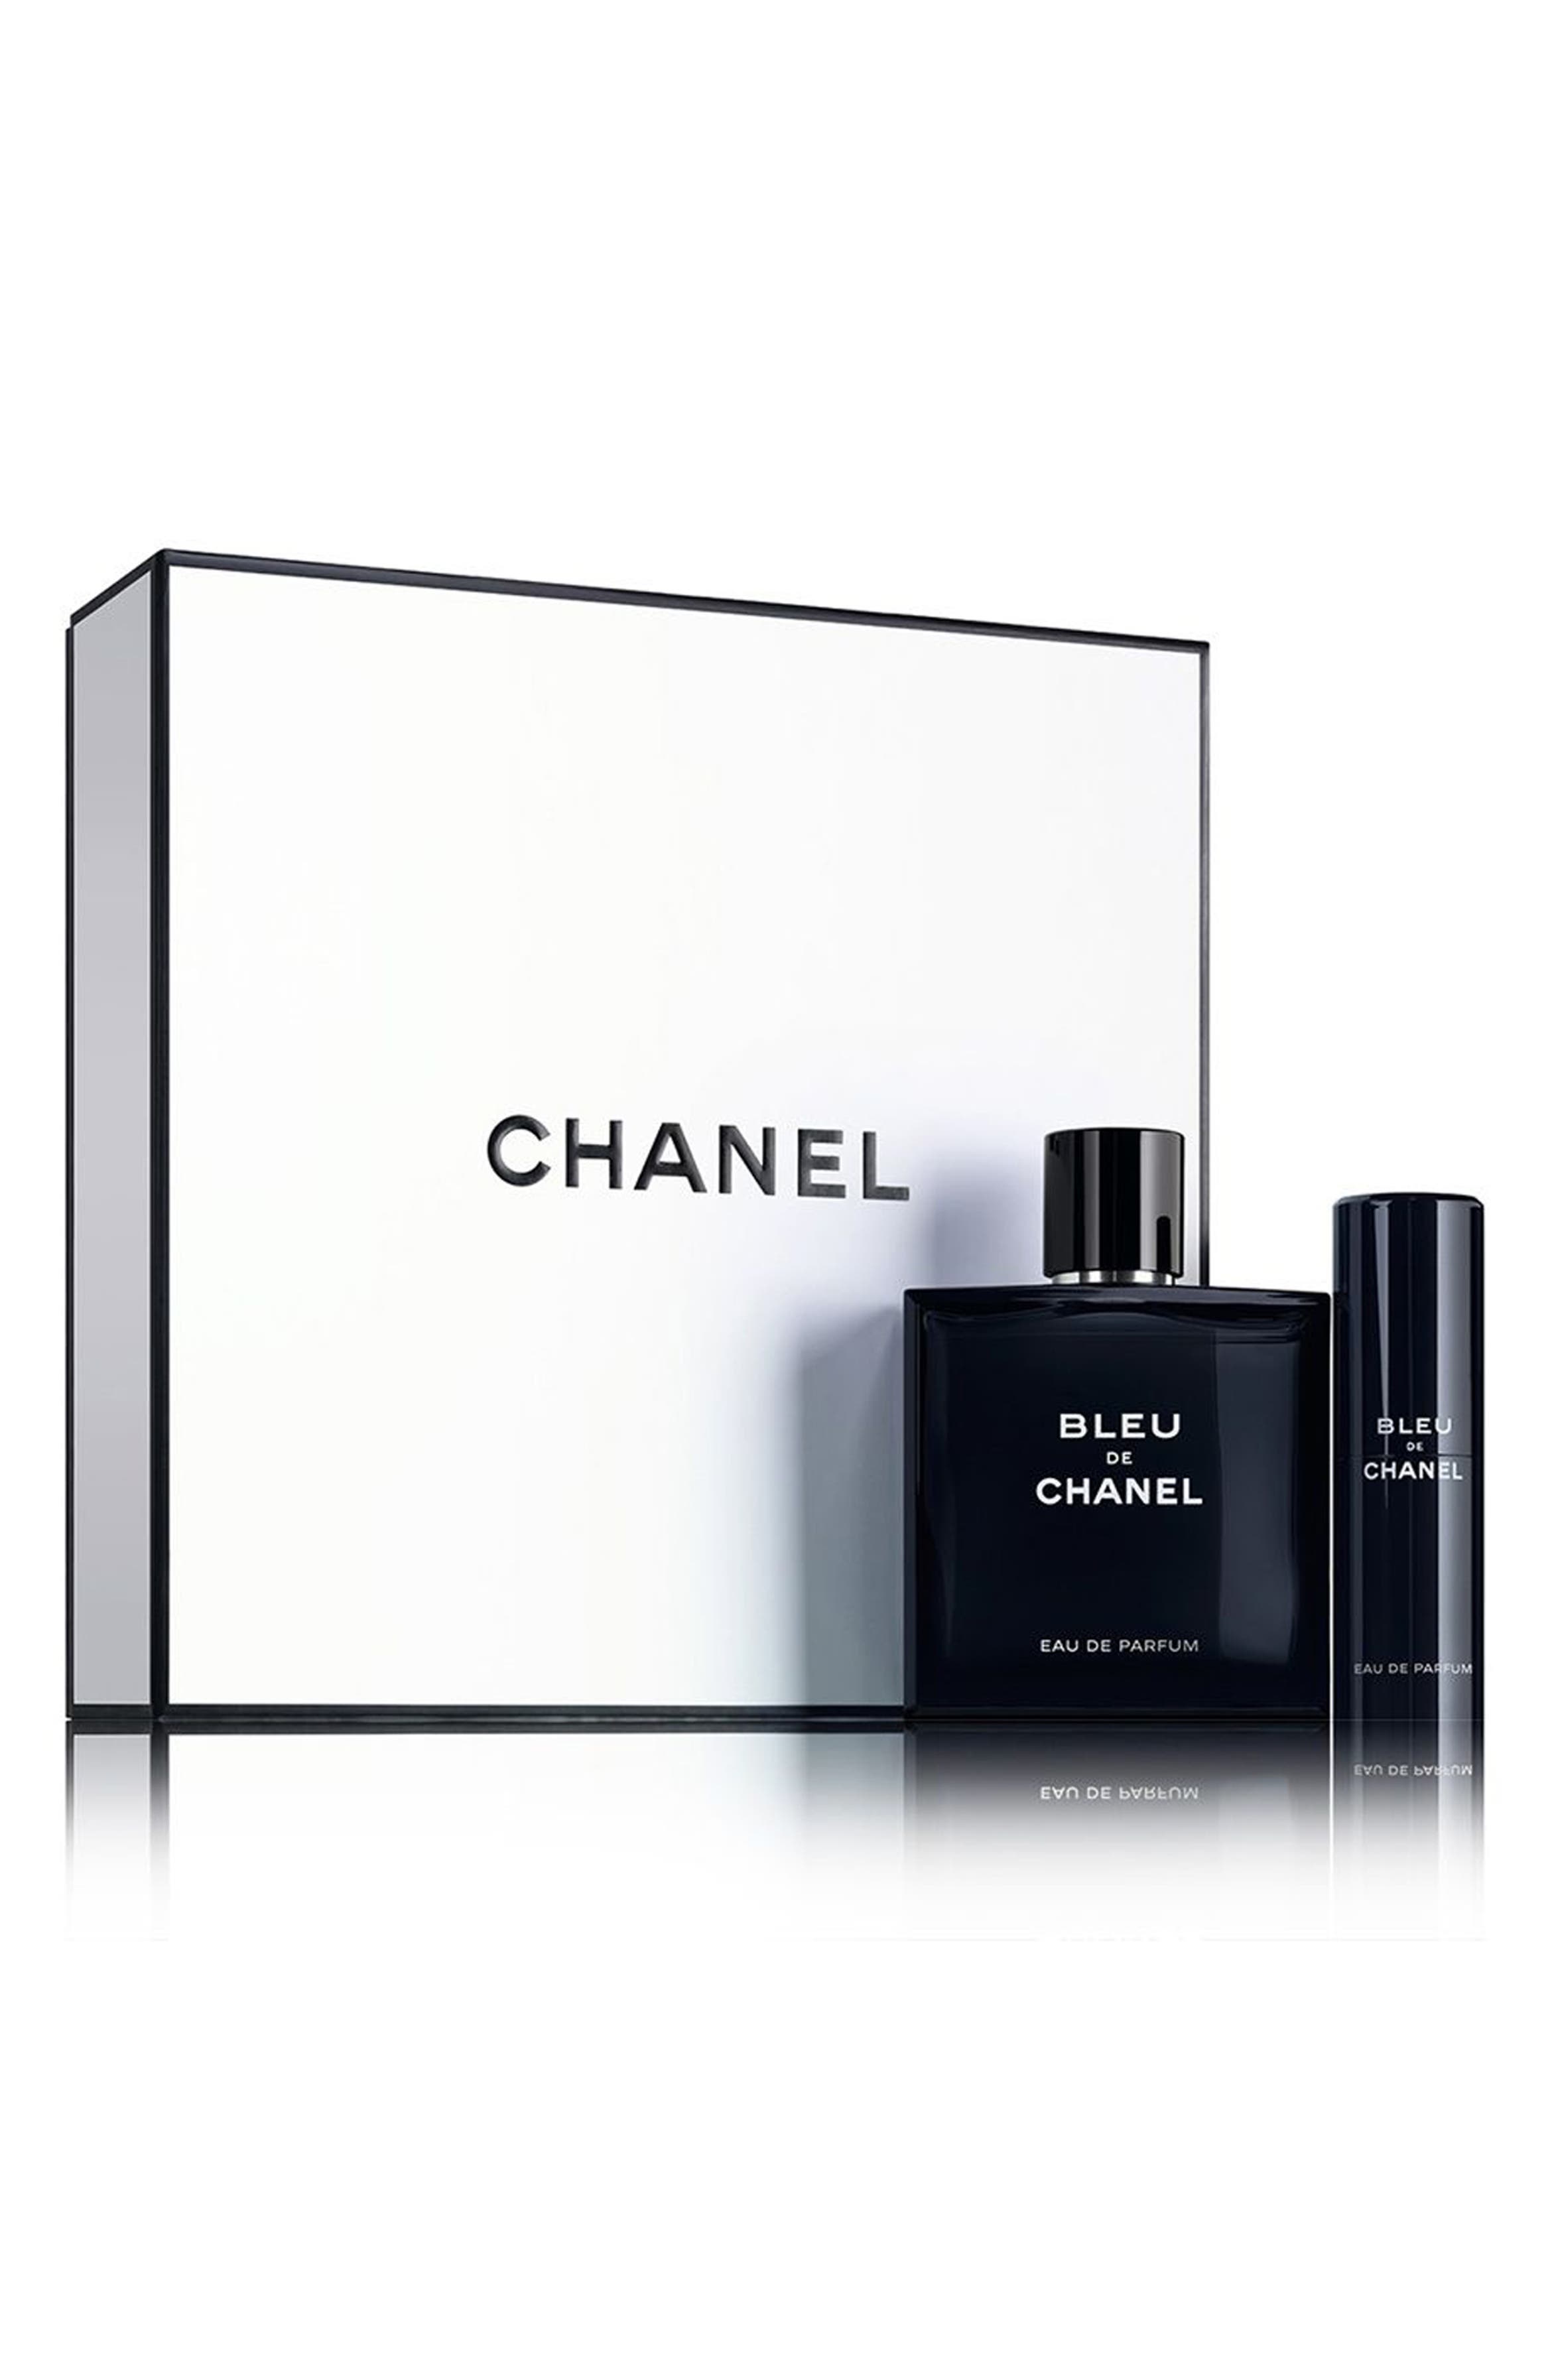 CHANEL BLEU DE CHANEL Eau de Parfum pour Homme Travel